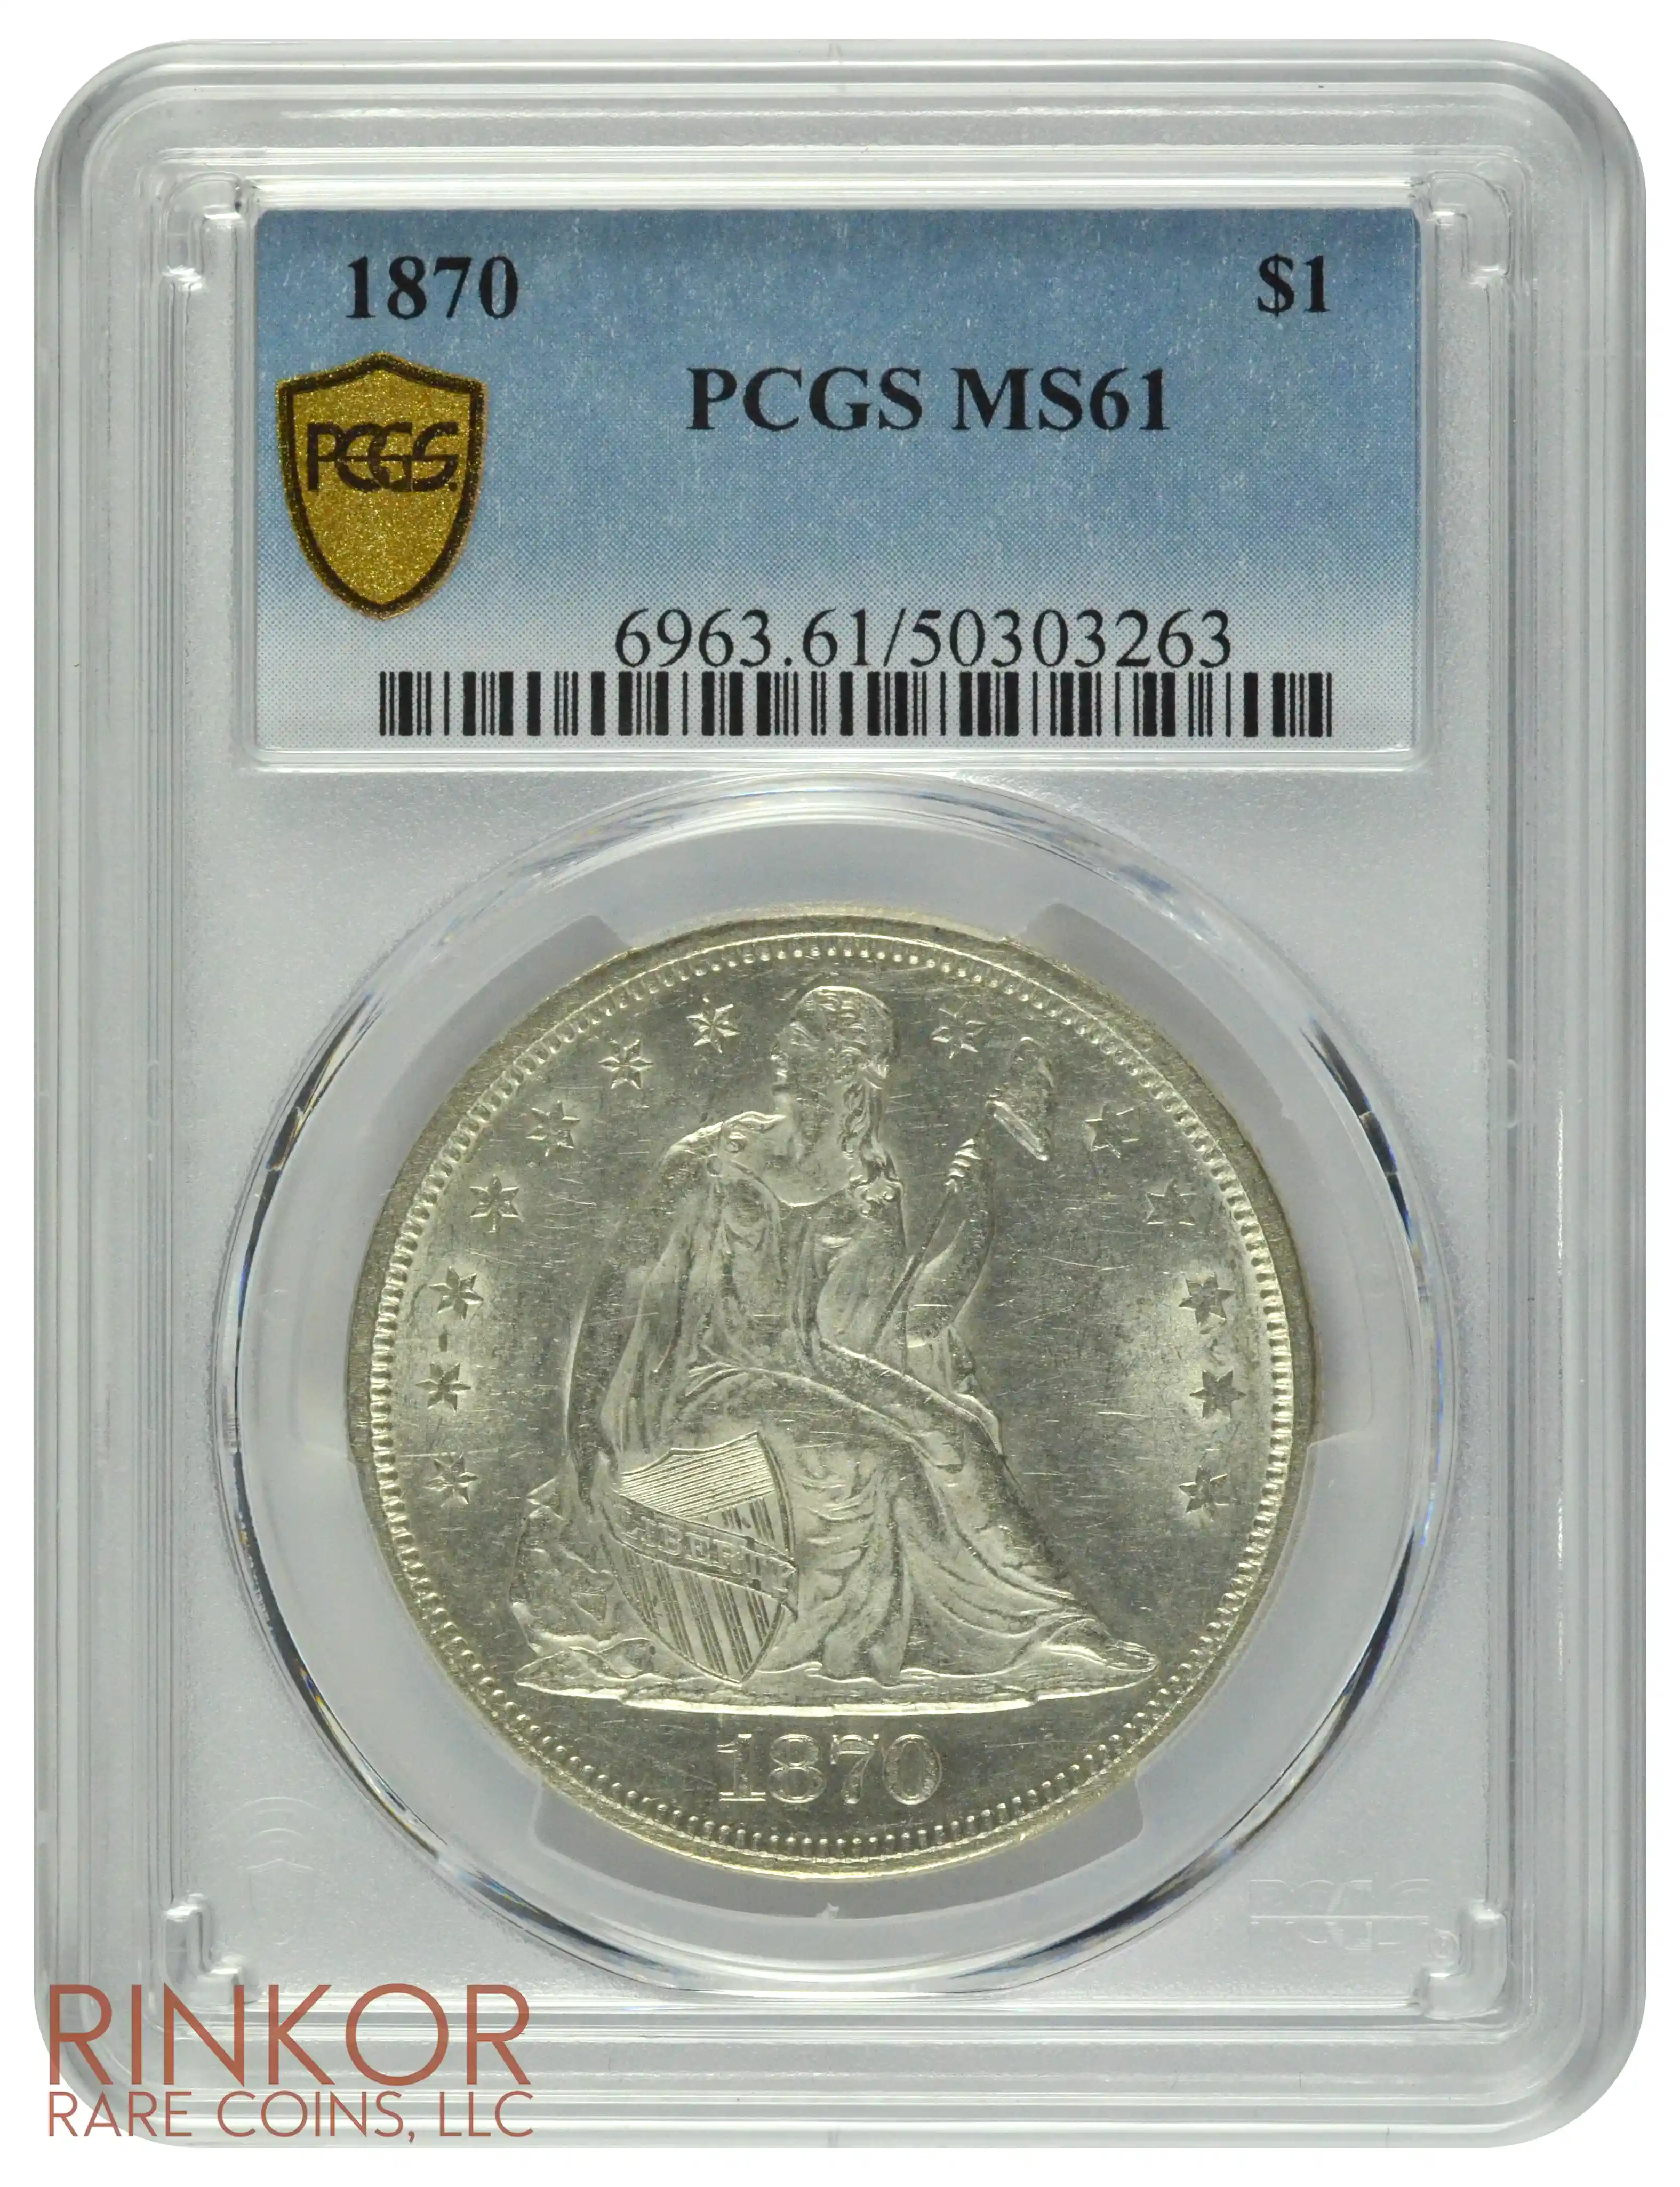 1870 $1 PCGS MS 61